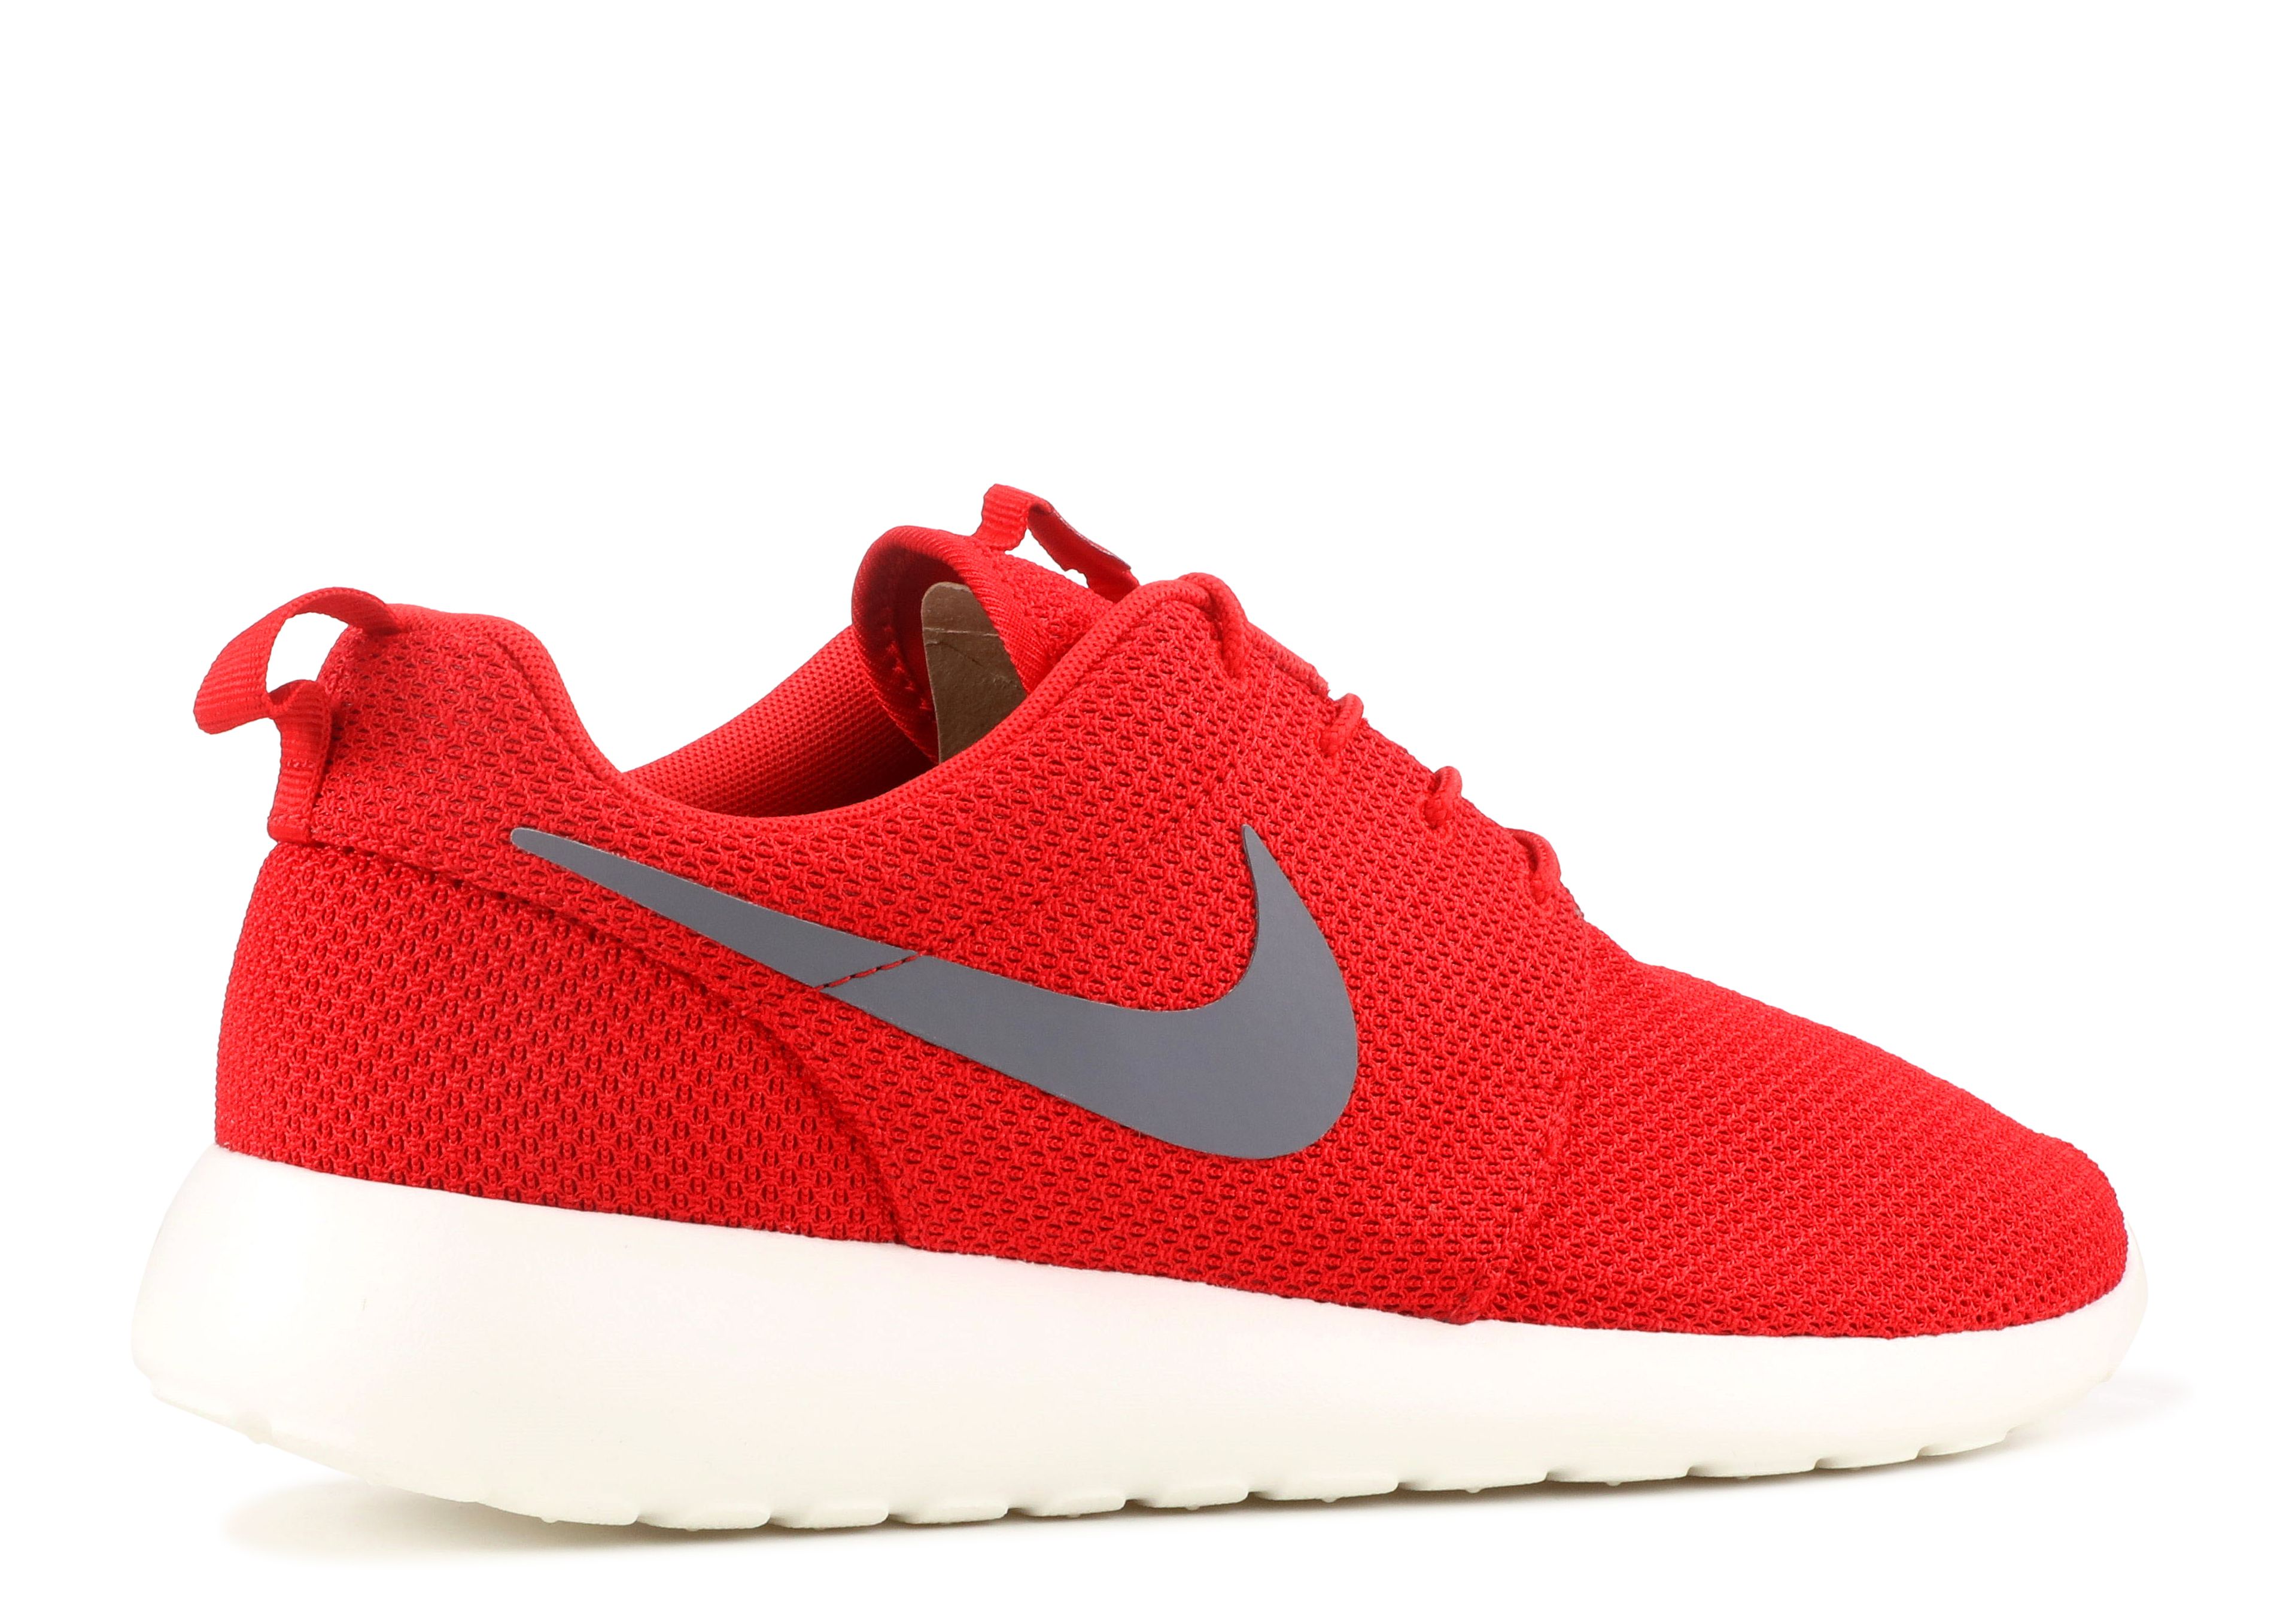 Roshe One 'Sport Red' - Nike - 511881 